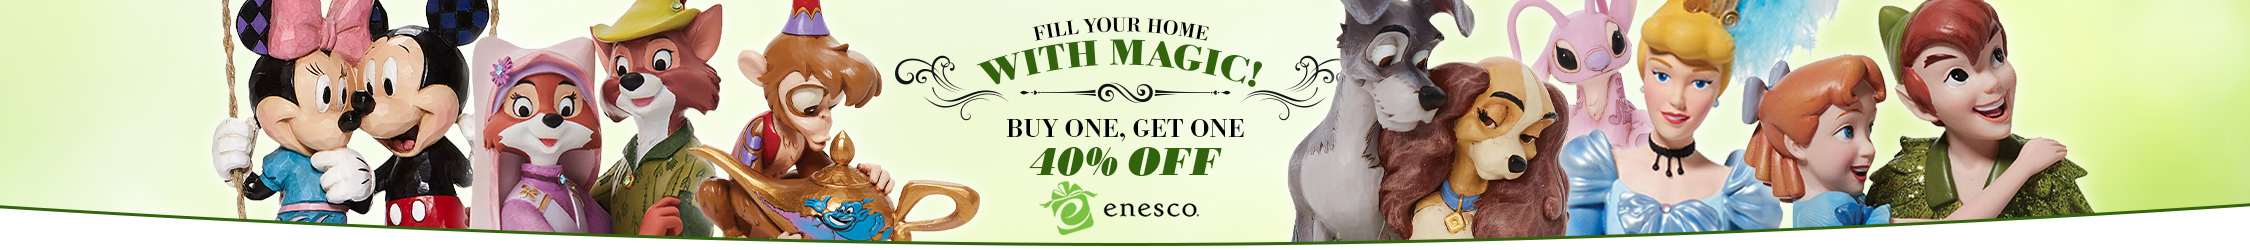 Buy One, Get One 40% Off Enesco